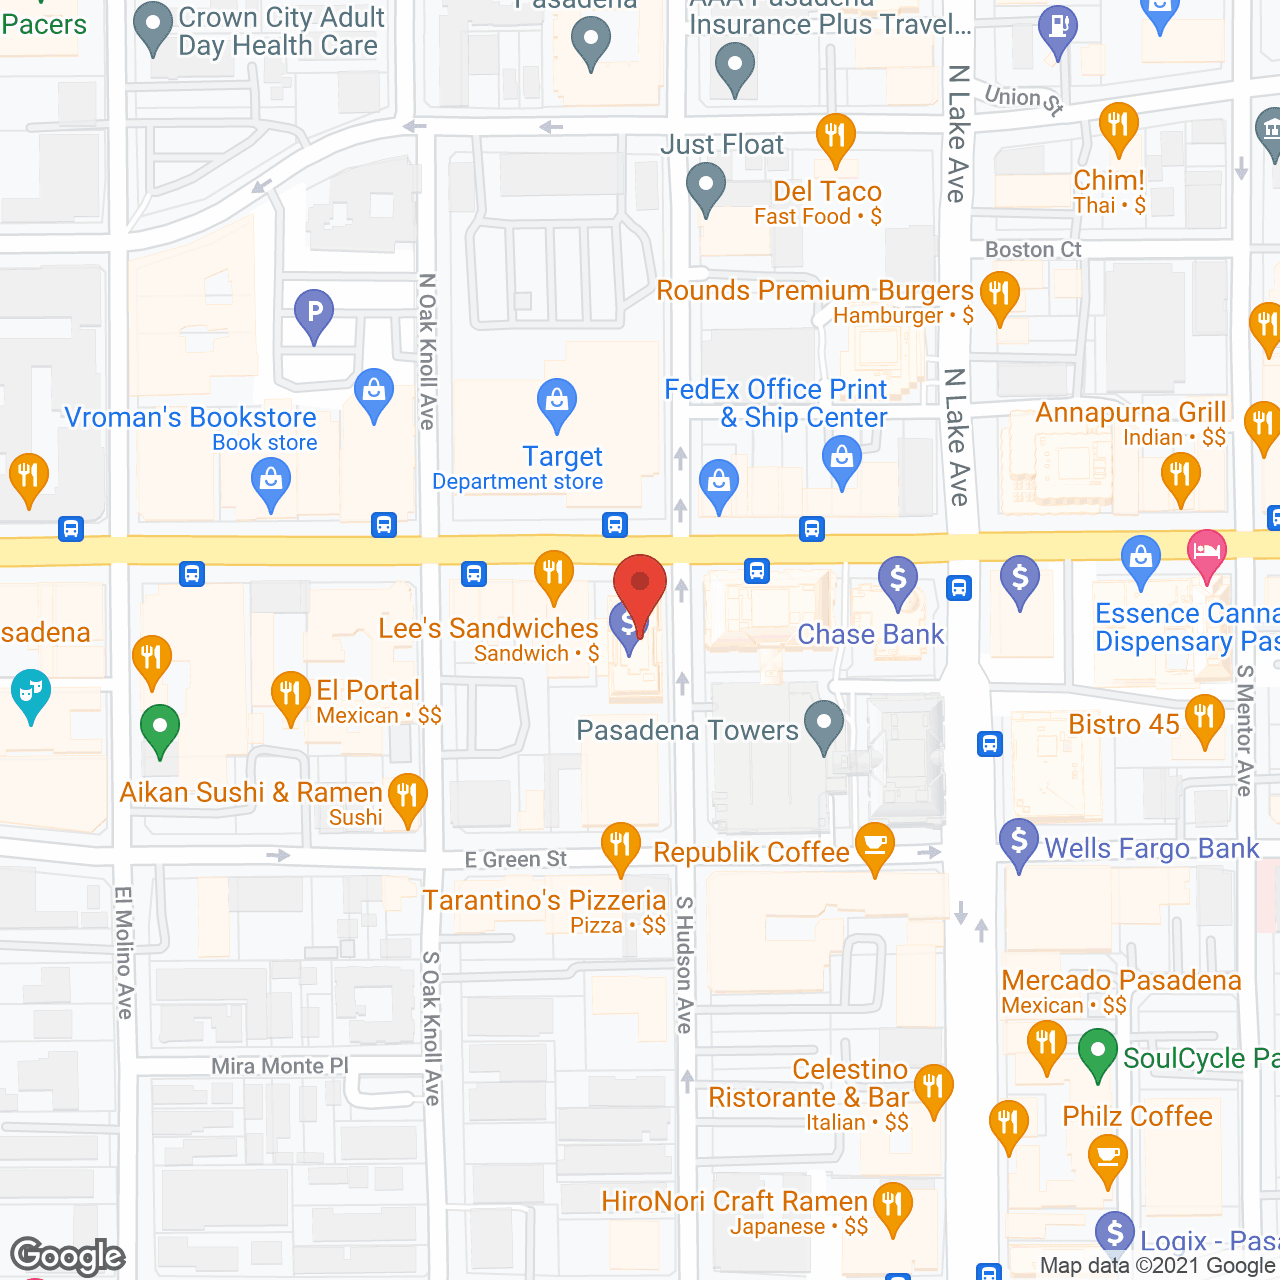 Cerna HomeCare Pasadena in google map